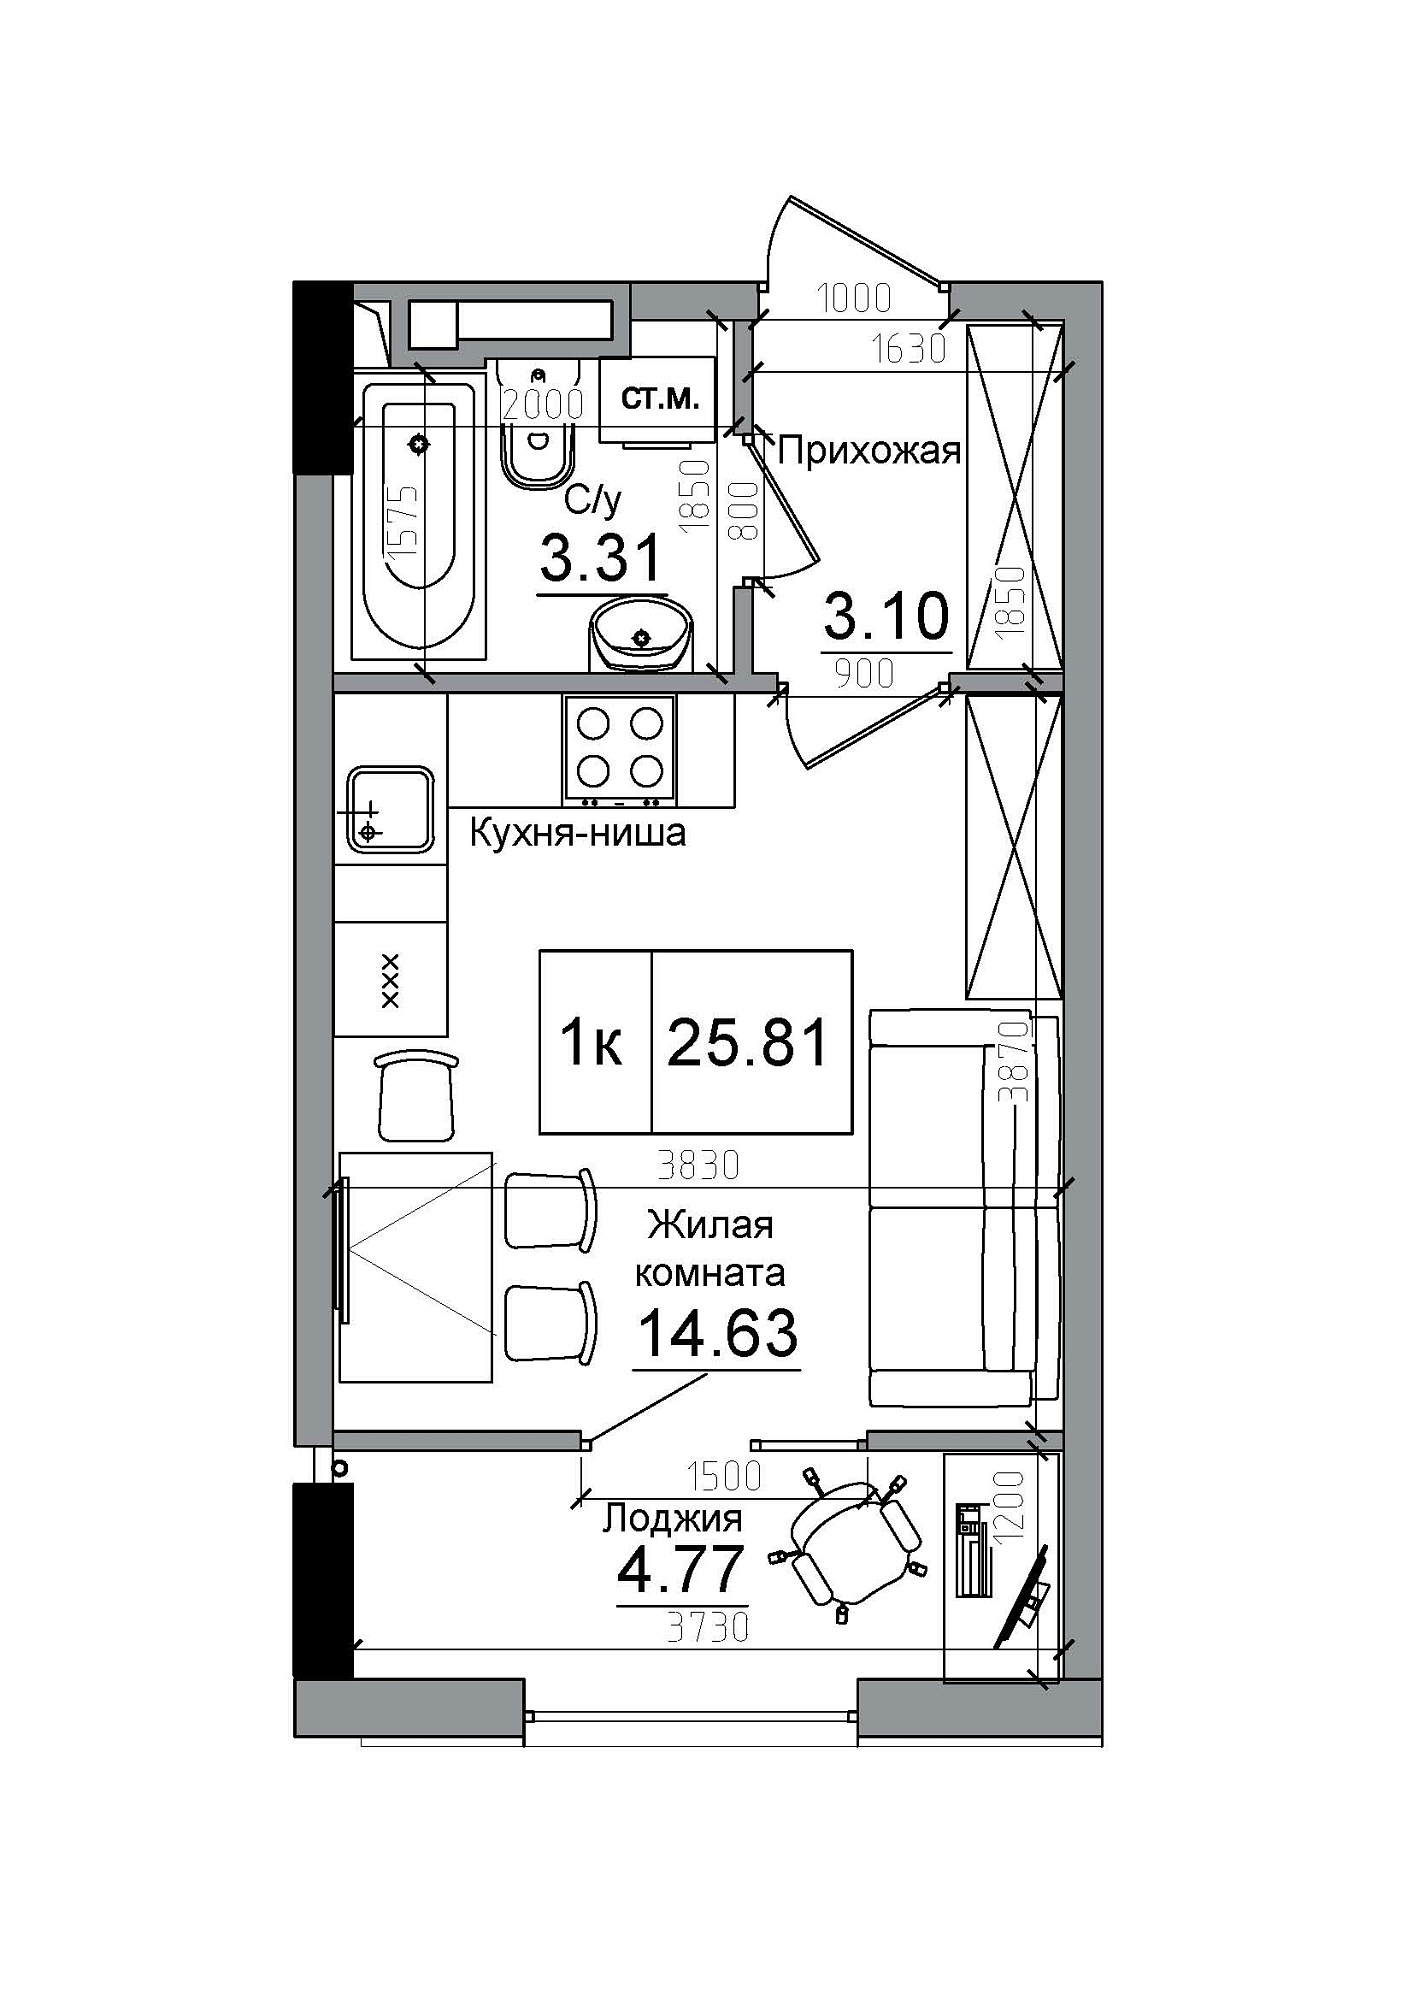 Планування Smart-квартира площею 25.81м2, AB-12-10/00013.